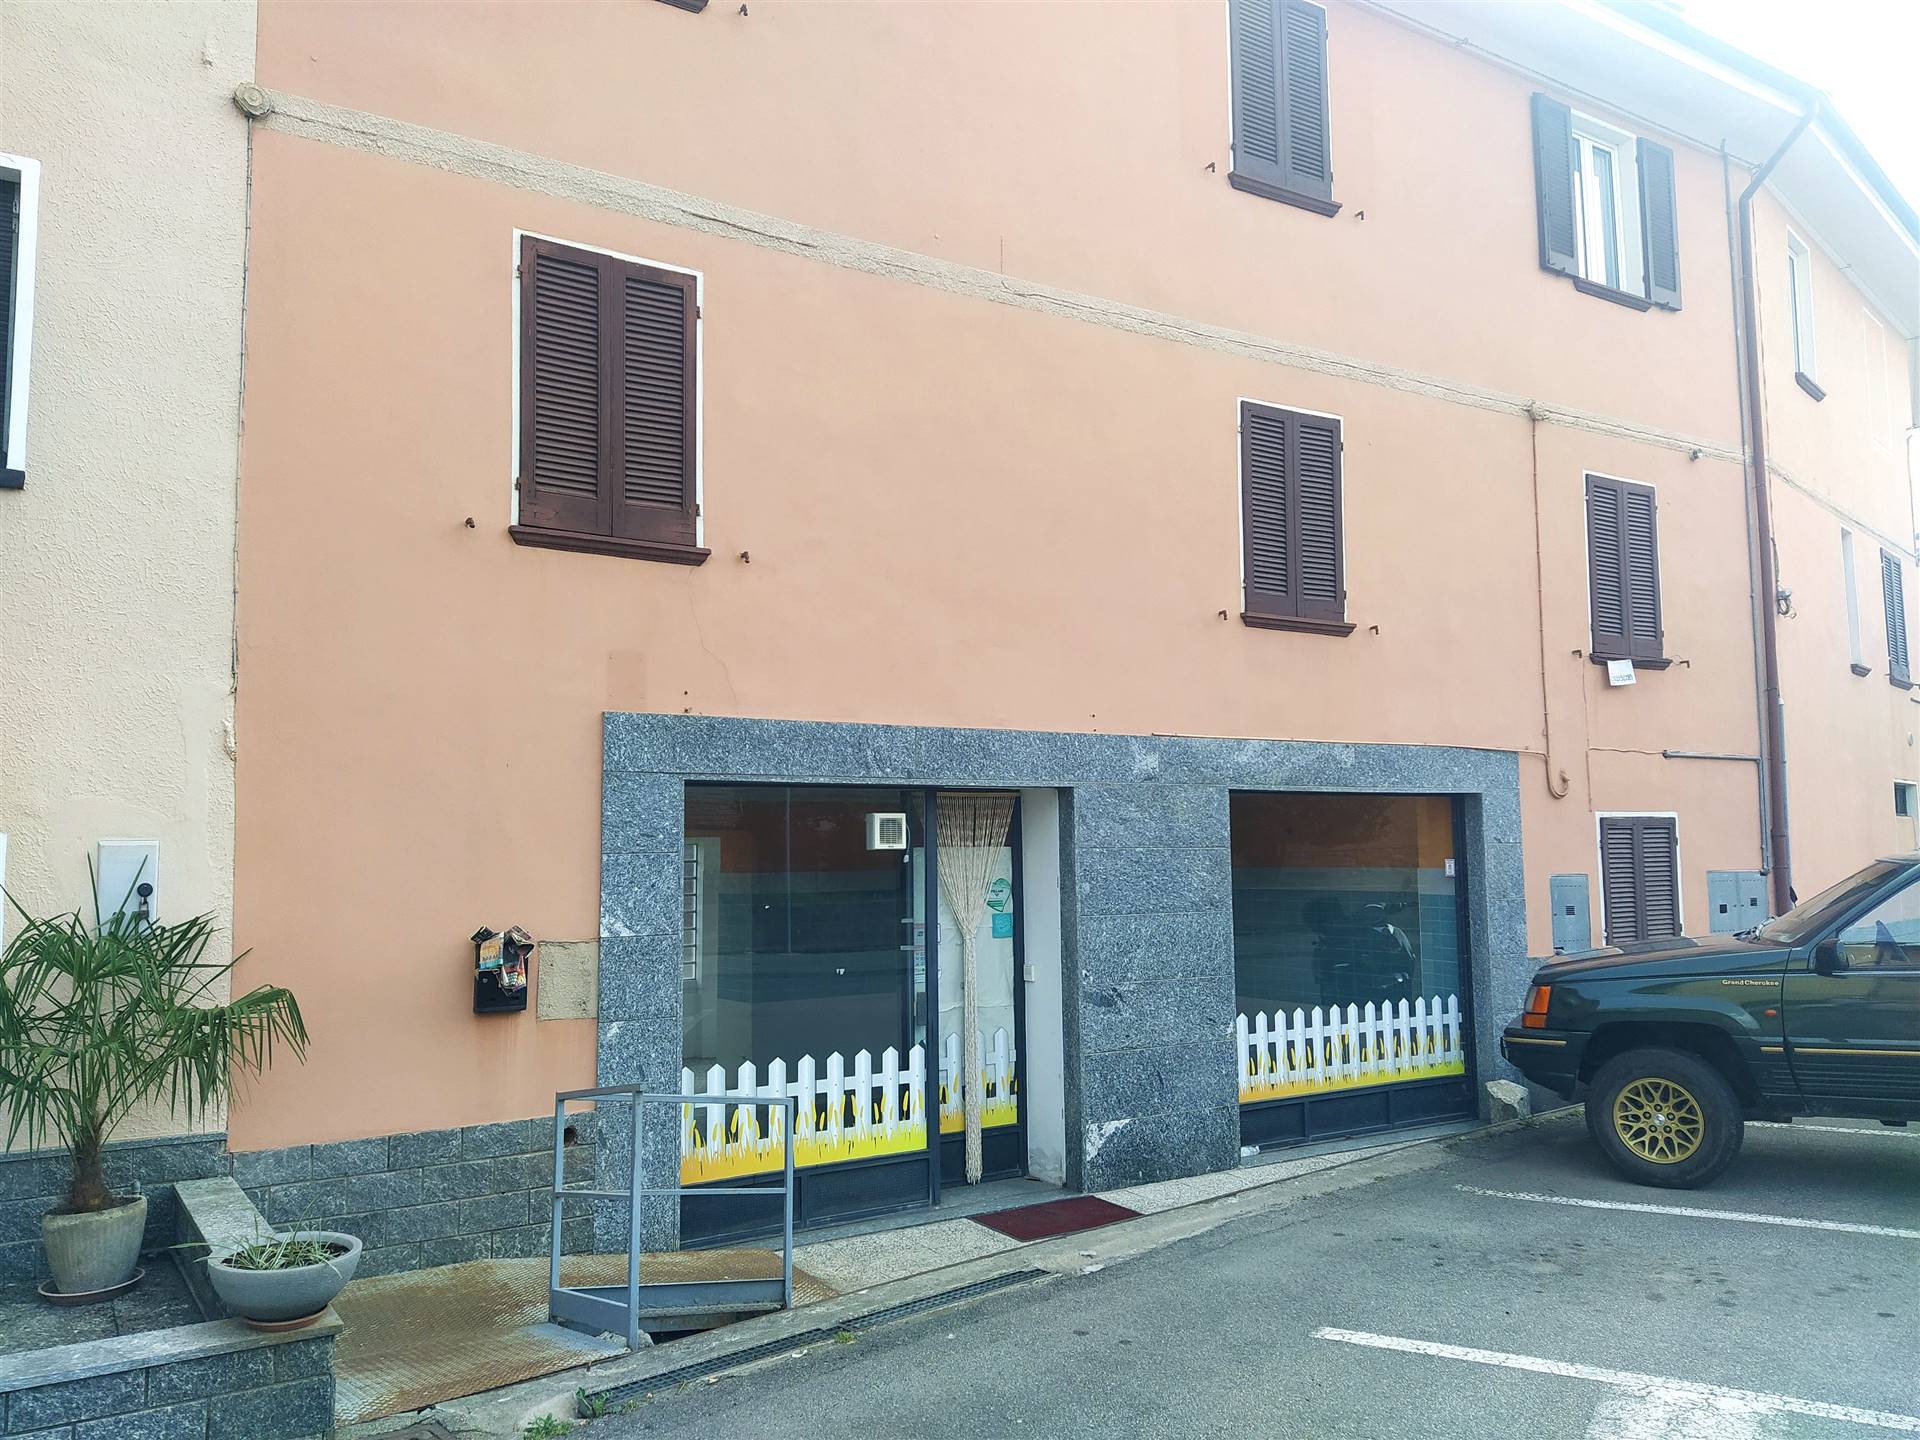 Immobile Commerciale in vendita a Gargallo, 2 locali, prezzo € 59.000 | PortaleAgenzieImmobiliari.it